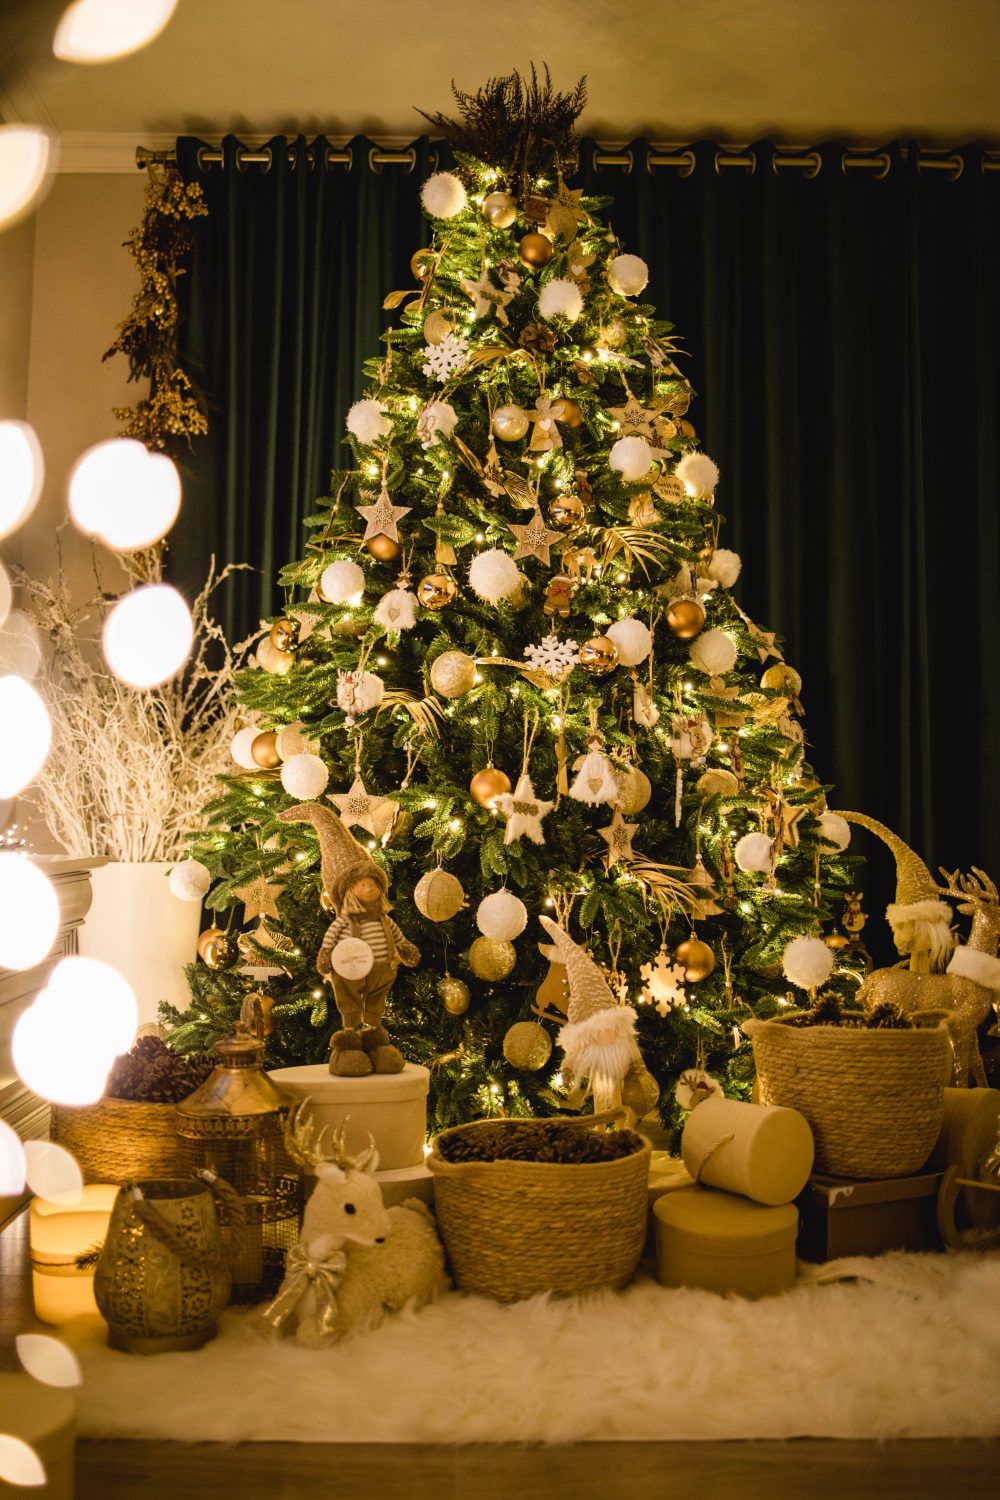 Brad Crăciun decorat complet Bârlad- lIvrare Gratuită - Alegria Christmas Collection 2022